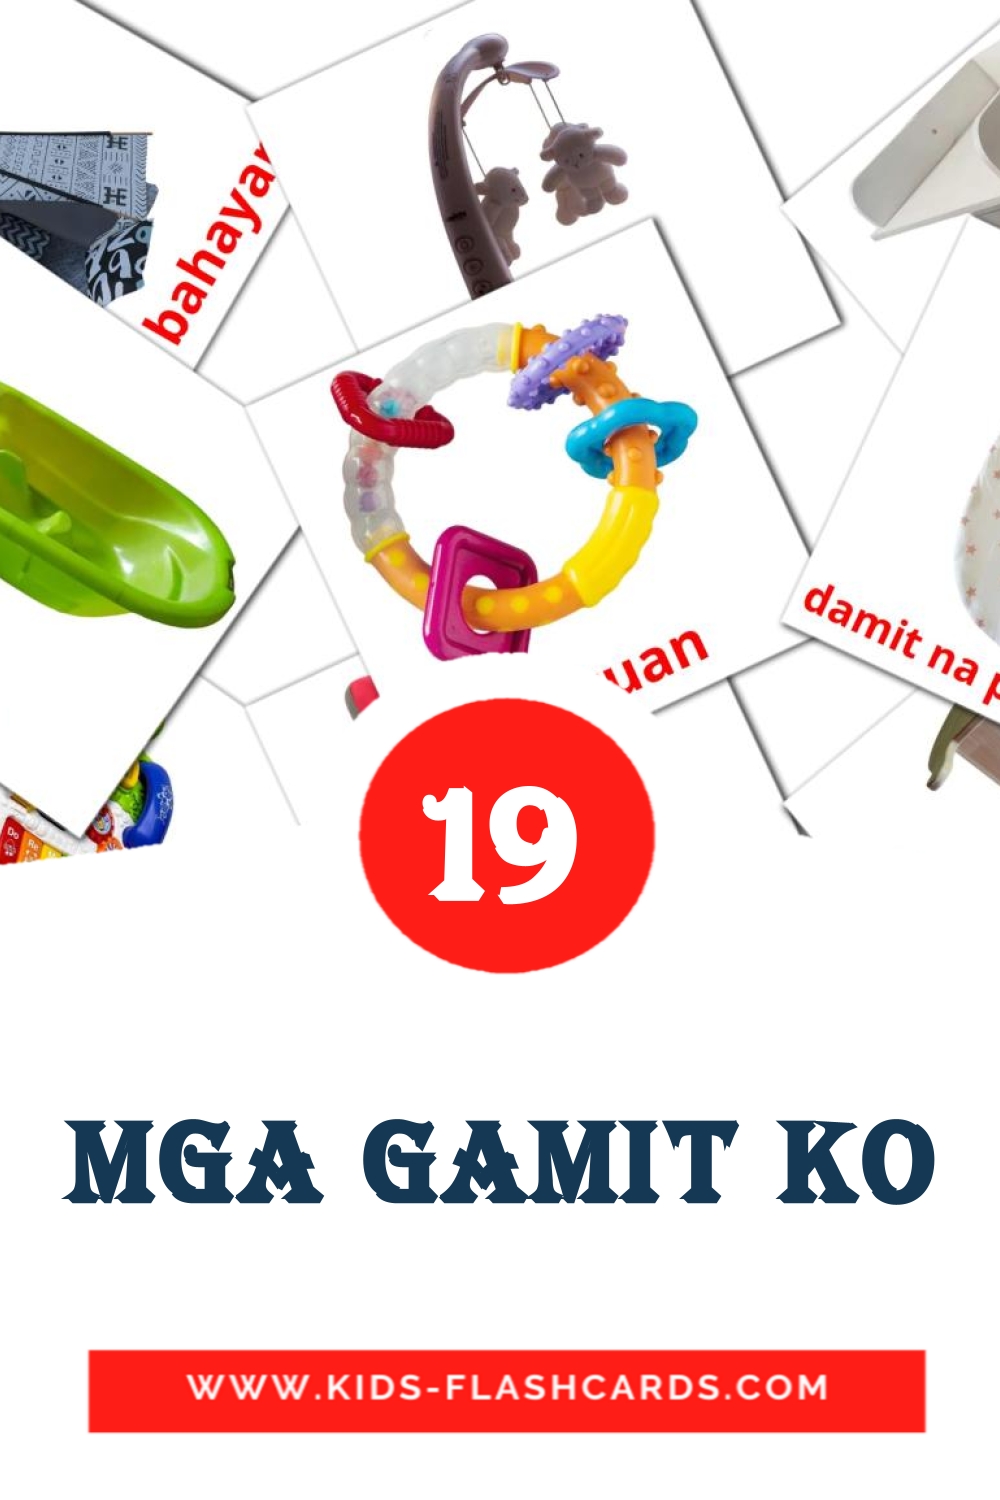 Mga gamit ko на филиппинском для Детского Сада (19 карточек)